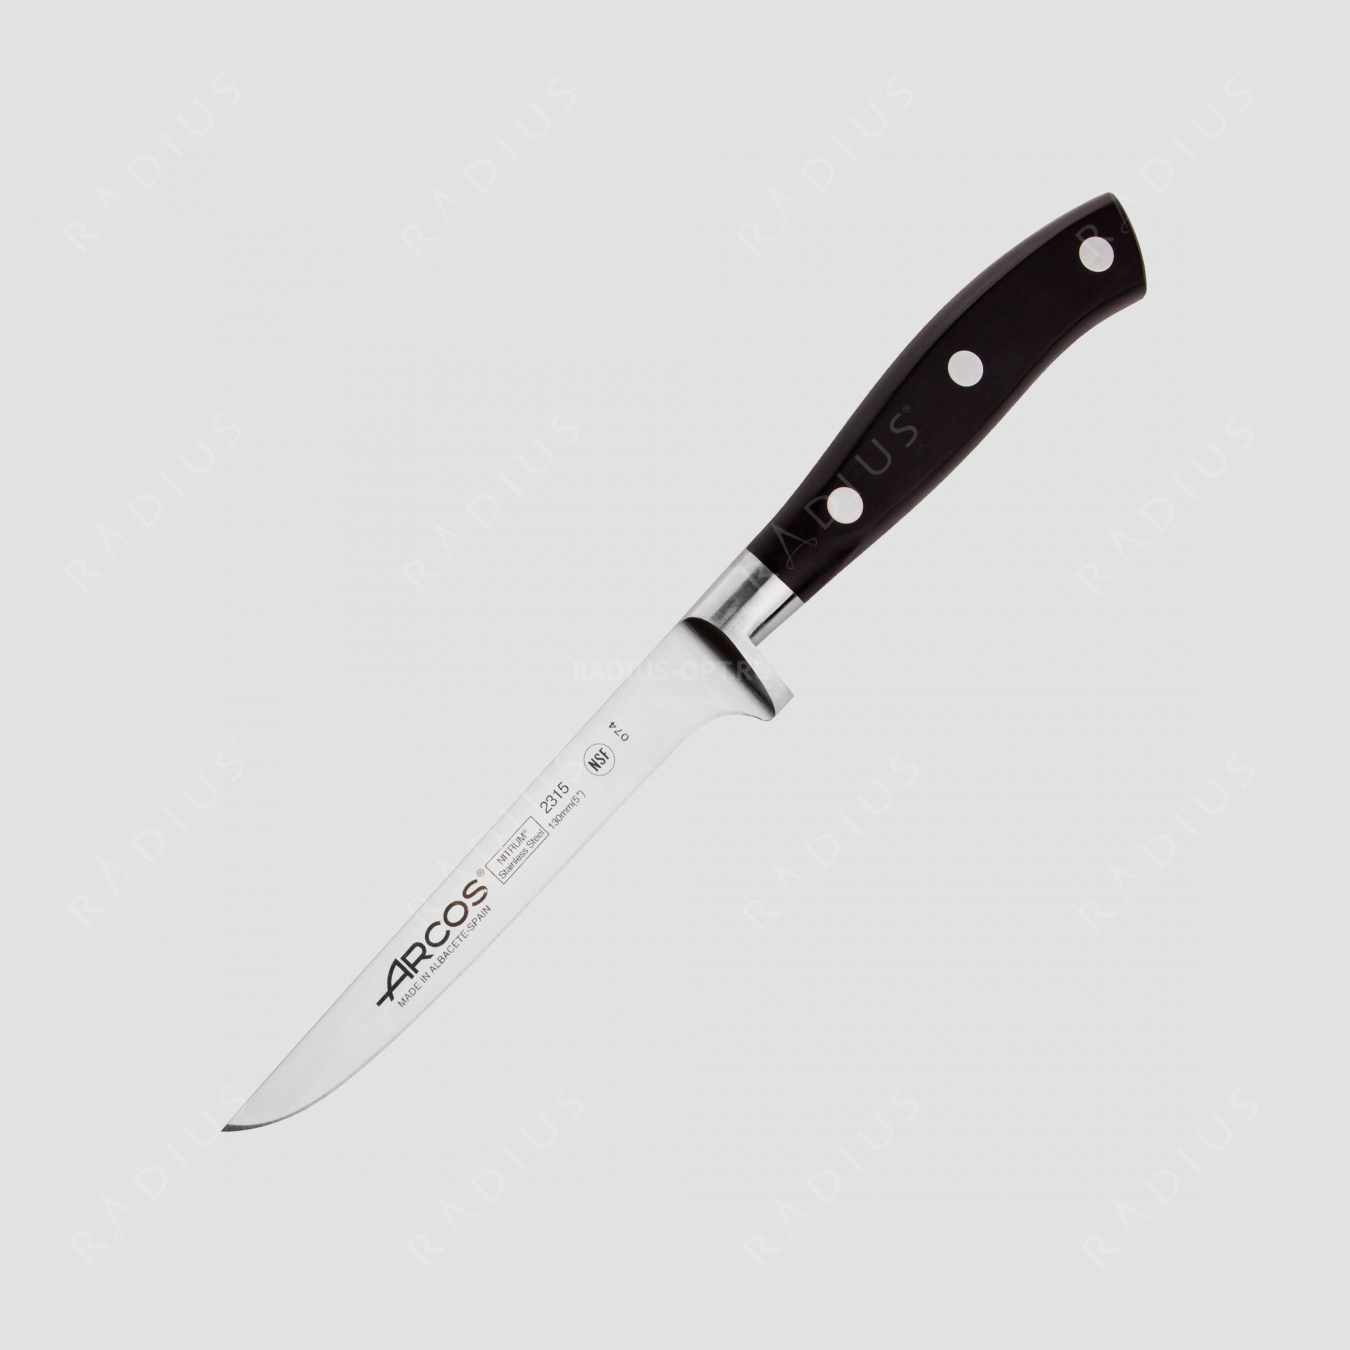 Нож кухонный обвалочный 13 см, серия Riviera, ARCOS, Испания